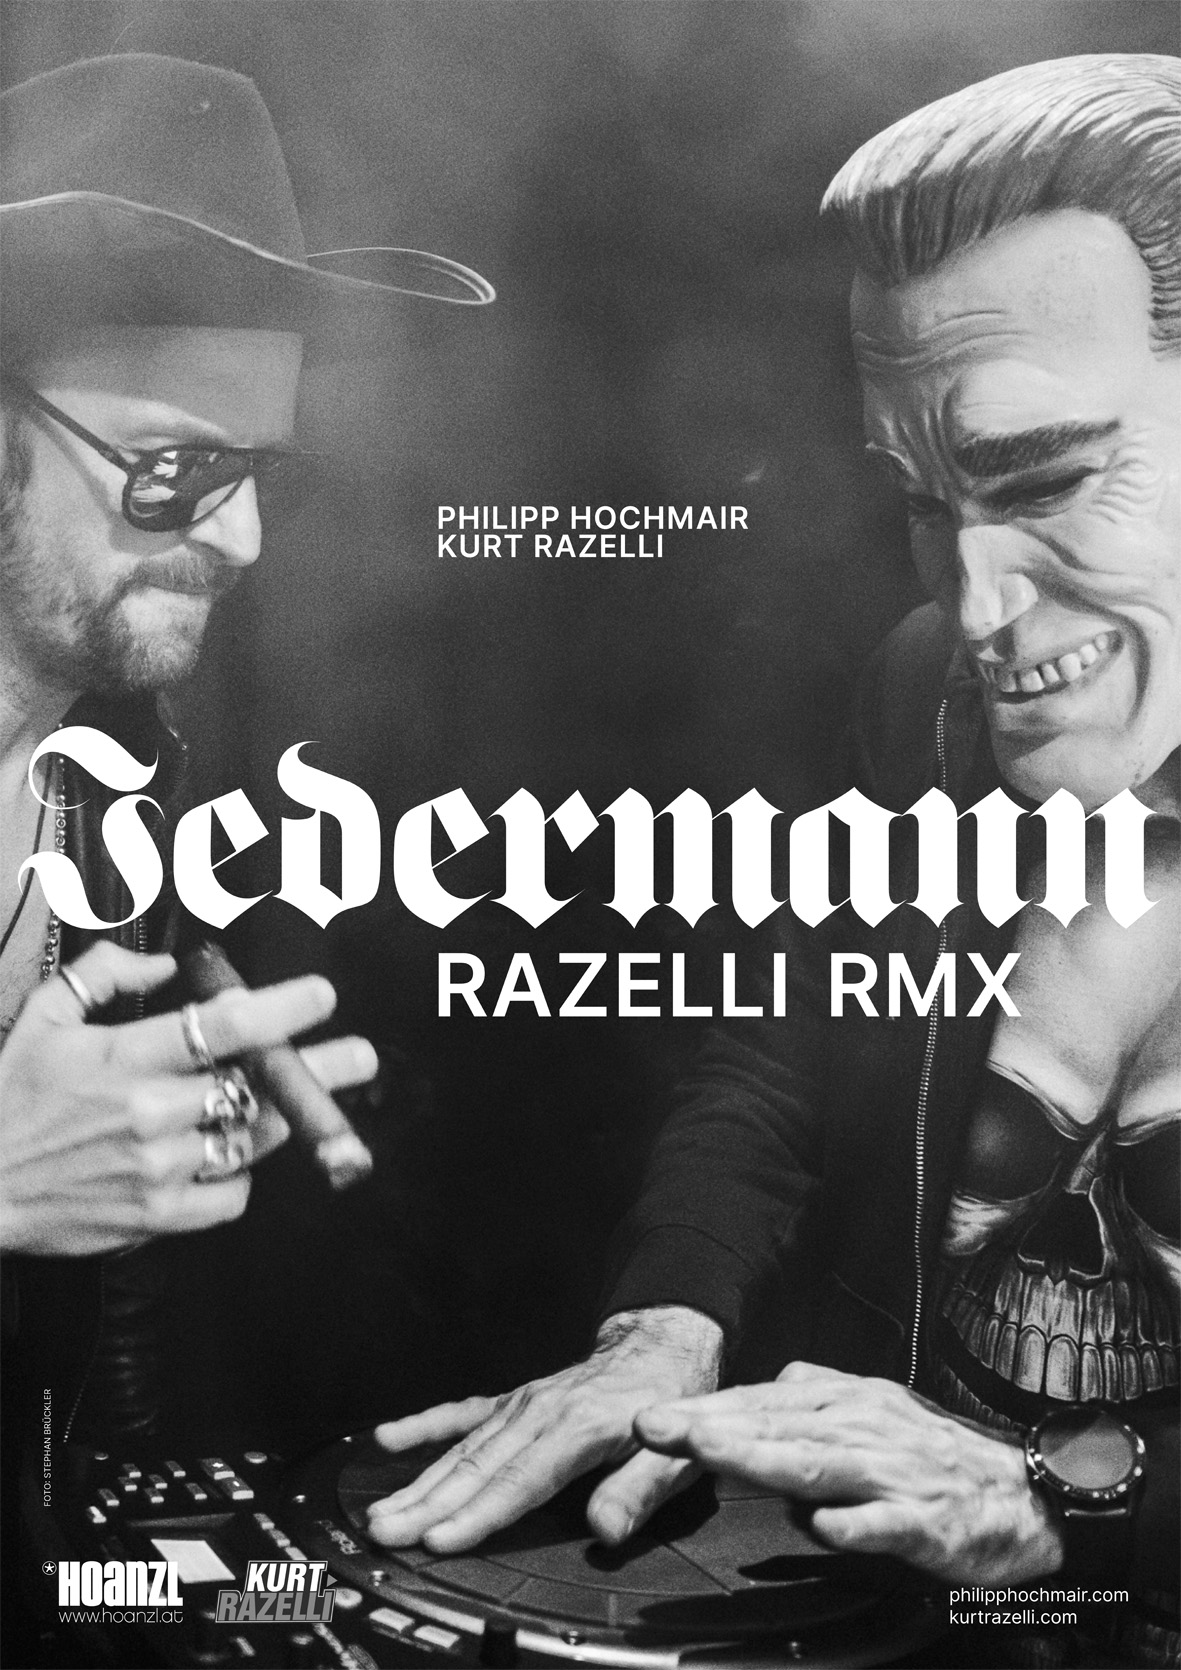 Philipp Hochmair & Kurt Razelli - Jedermann Razelli RMX am 30. April 2023 @ Stadtsaal Wien.